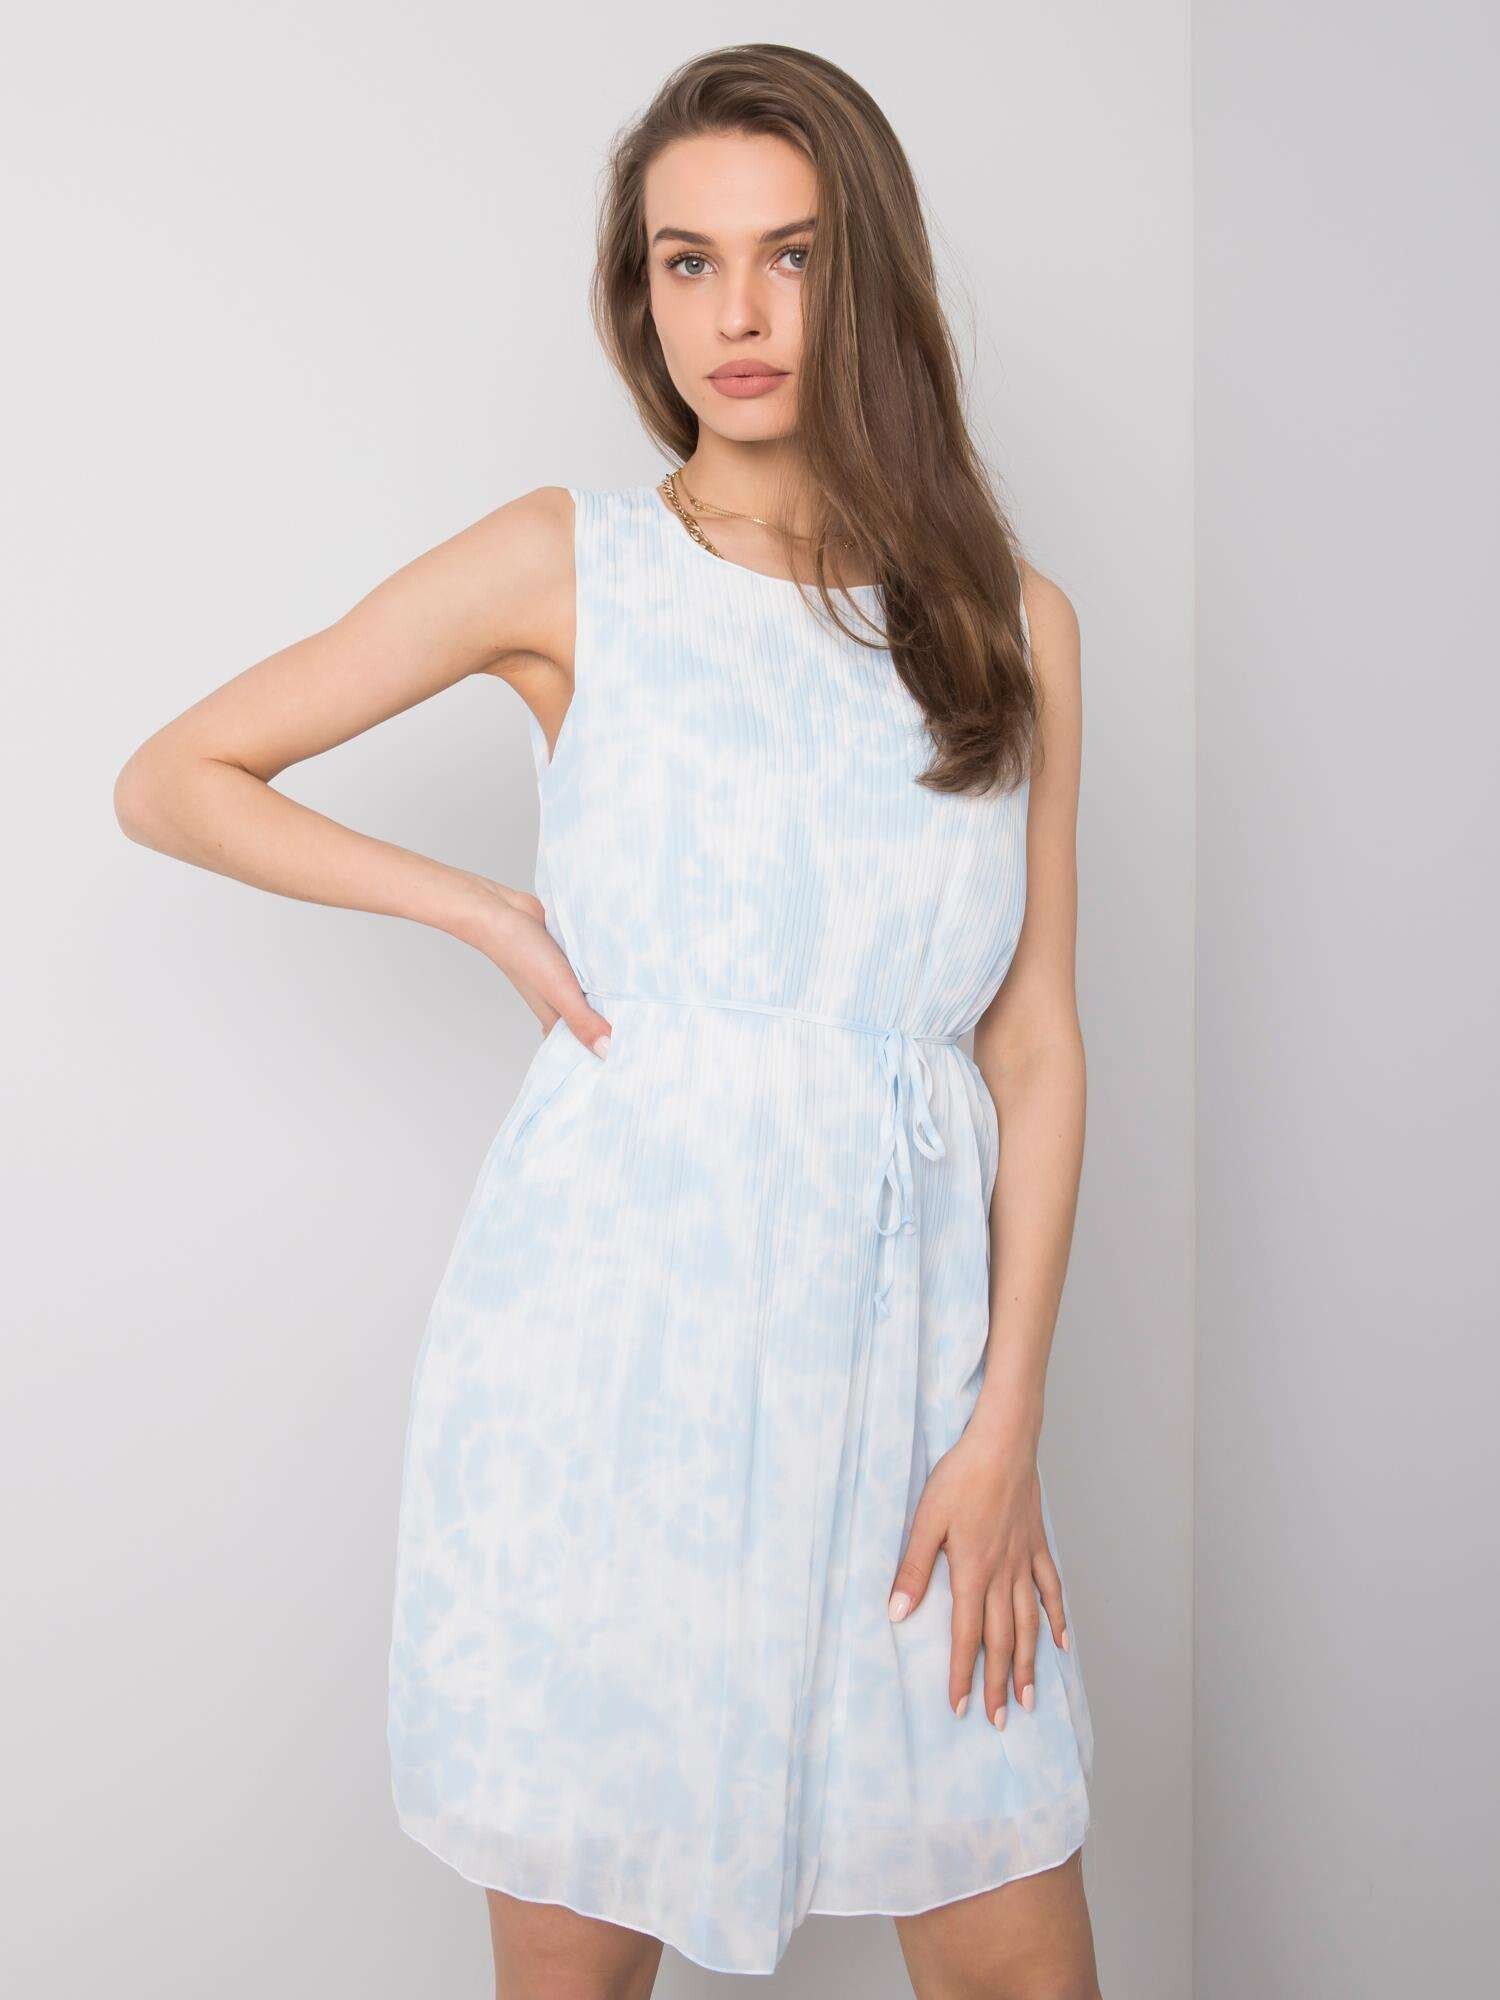 Женское летнее платье без рукавов белое с розовым Factory Price